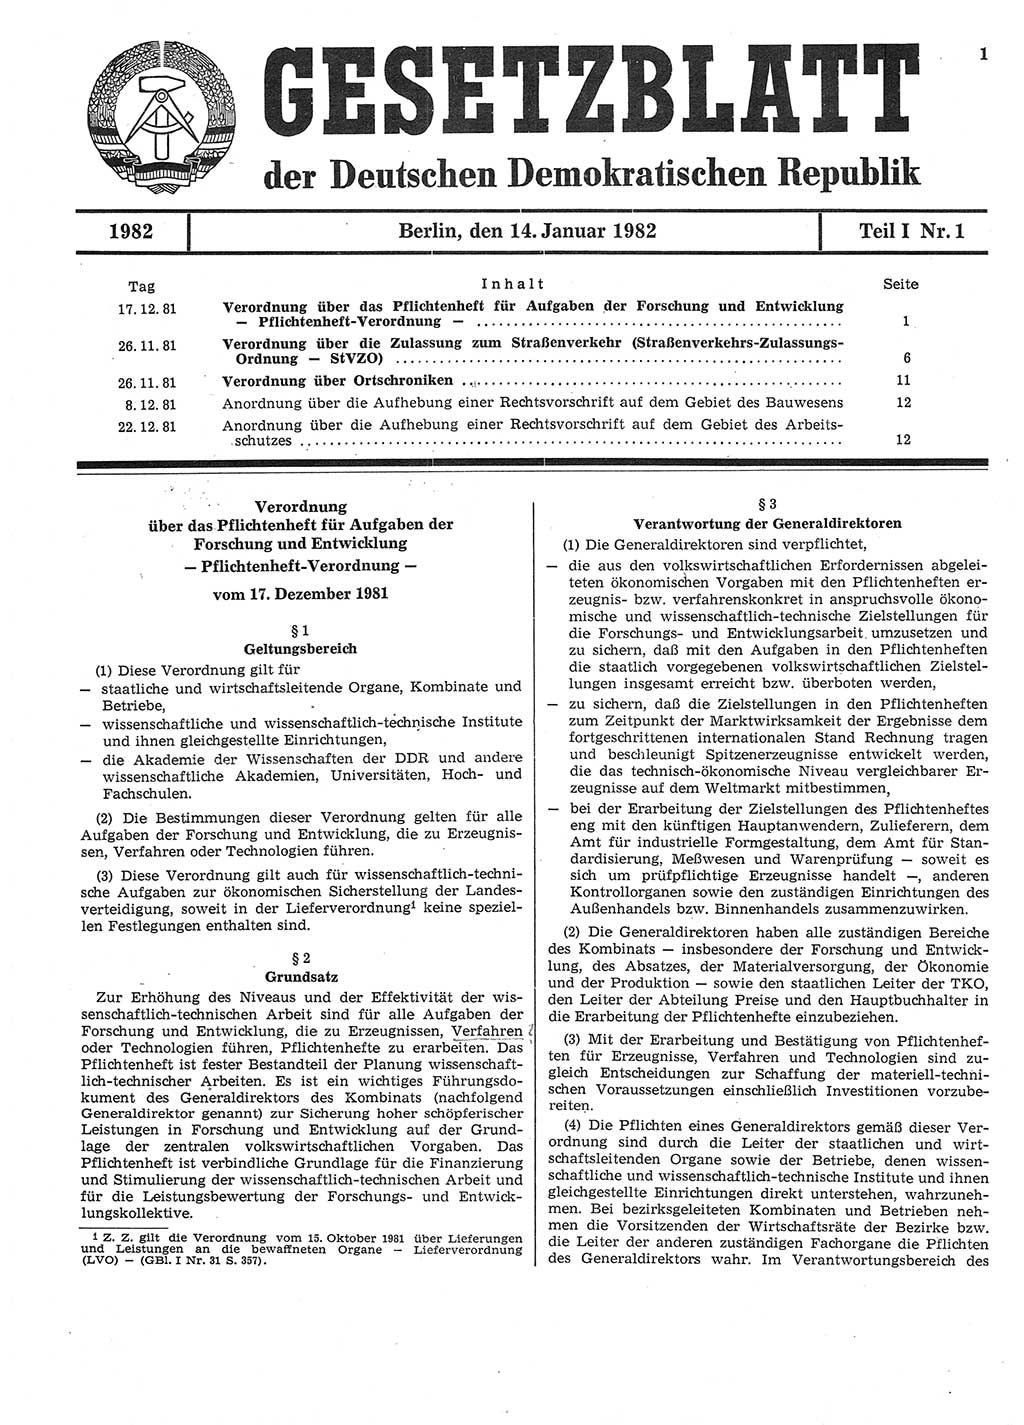 Gesetzblatt (GBl.) der Deutschen Demokratischen Republik (DDR) Teil Ⅰ 1982, Seite 1 (GBl. DDR Ⅰ 1982, S. 1)